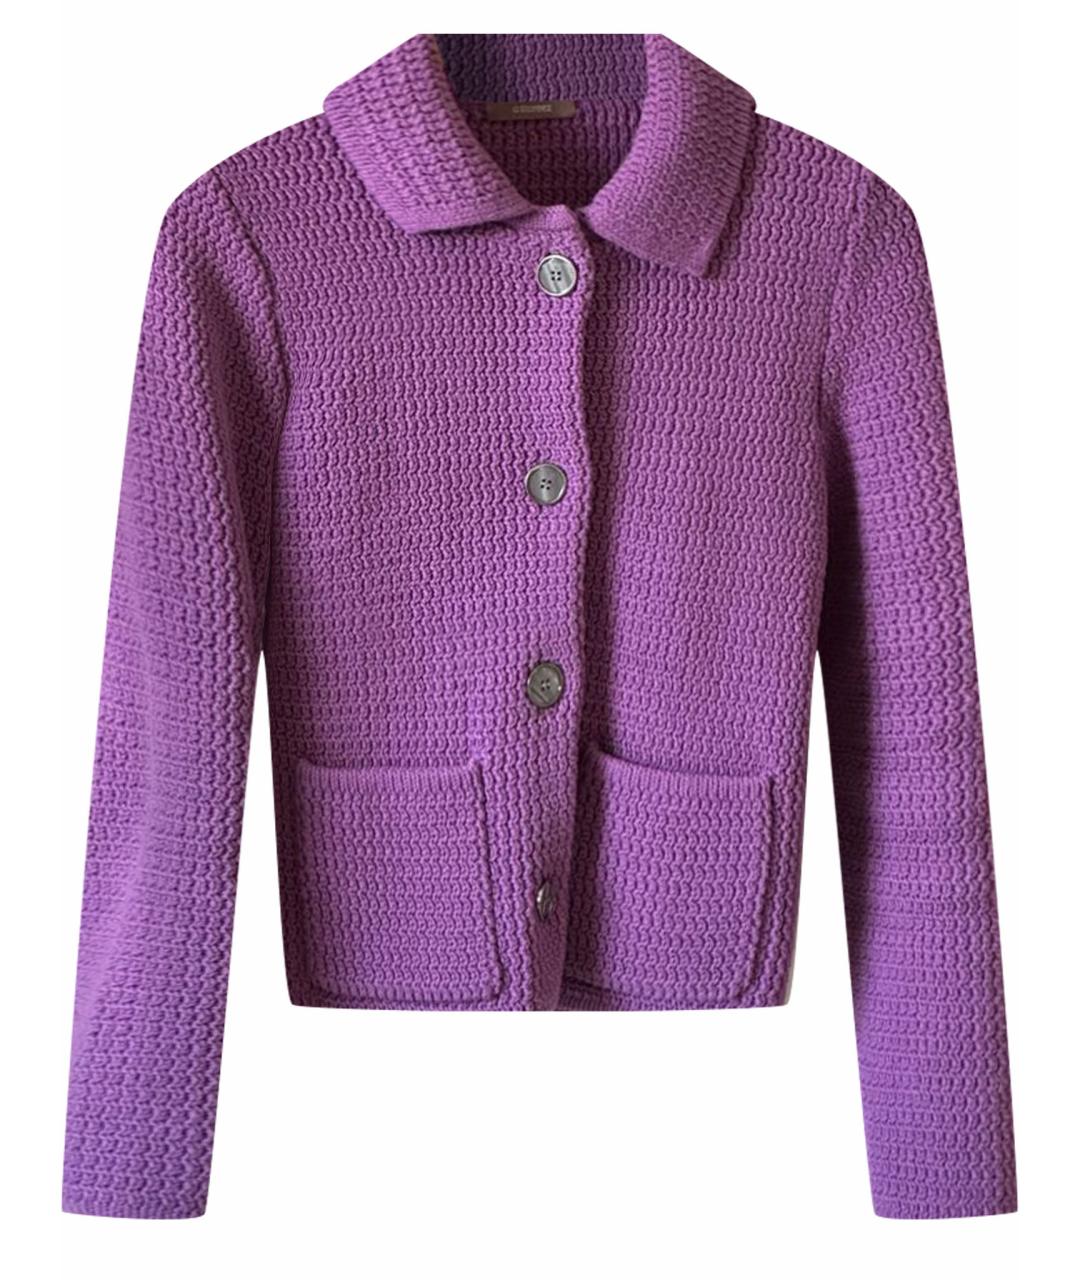 12 STOREEZ Фиолетовый хлопковый жакет/пиджак, фото 1